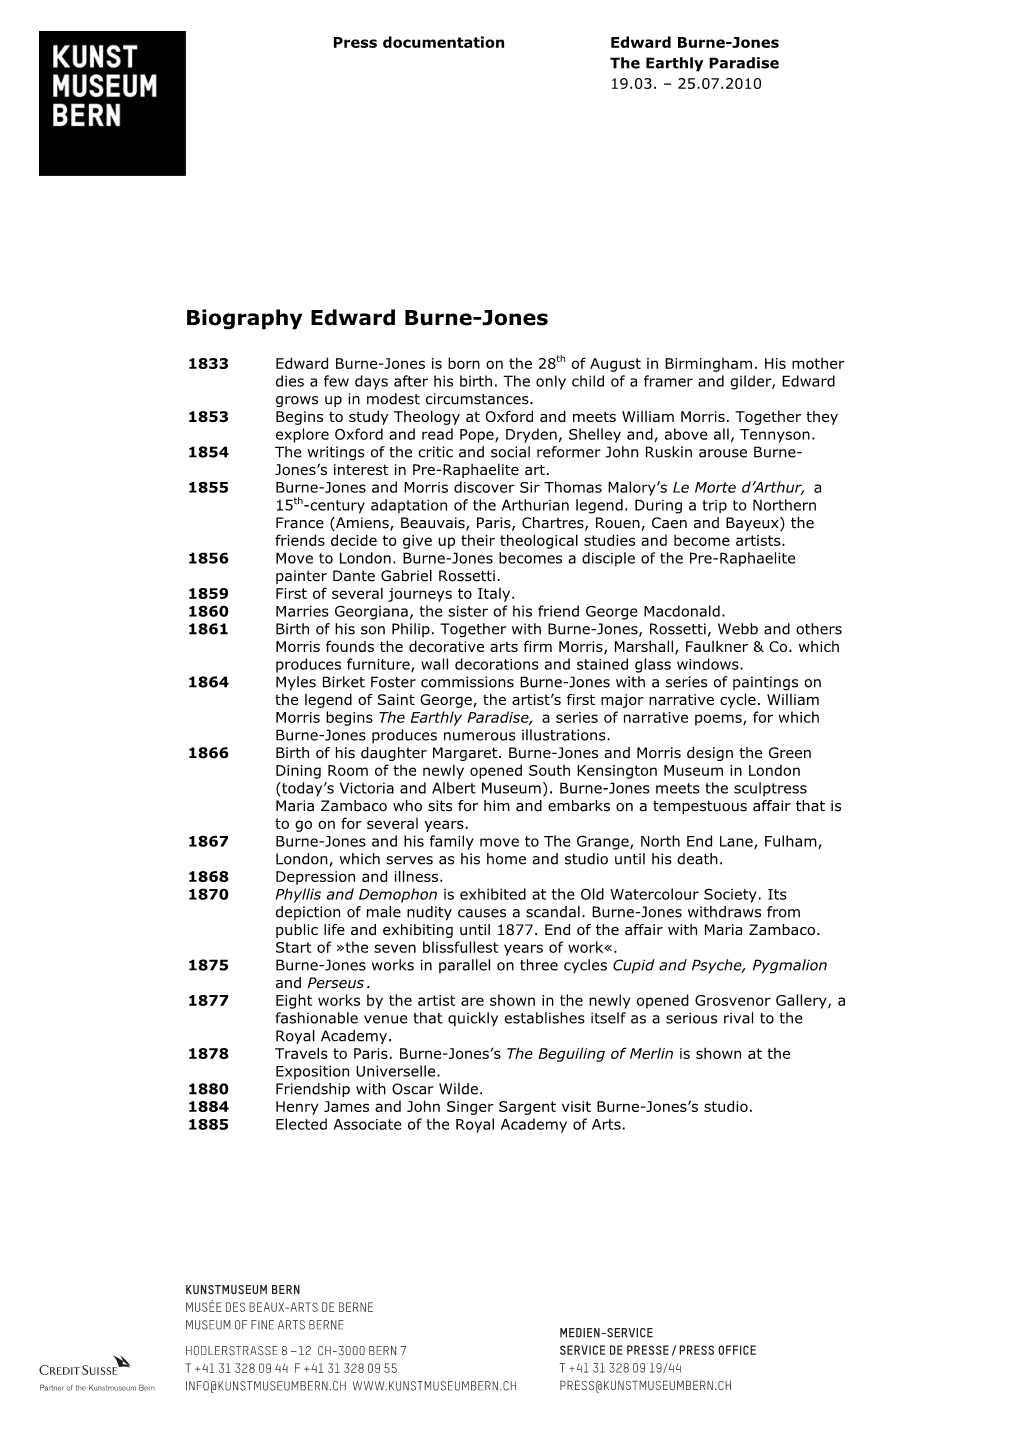 Biography Edward Burne-Jones